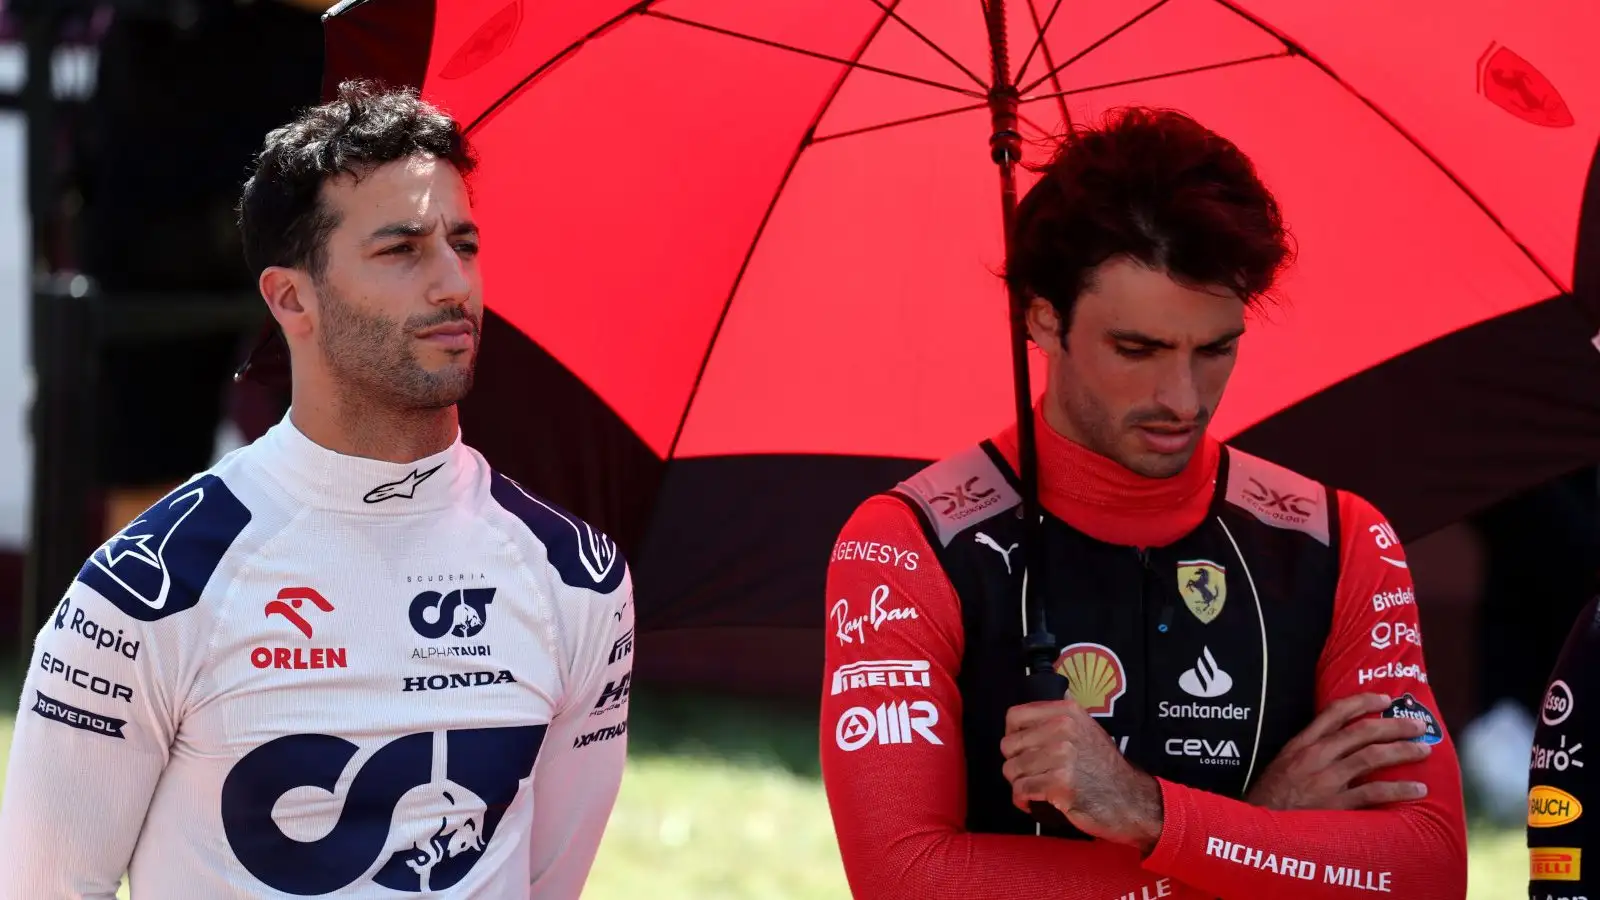 Daniel Ricciardo and Carlos Sainz standing for the national anthem.